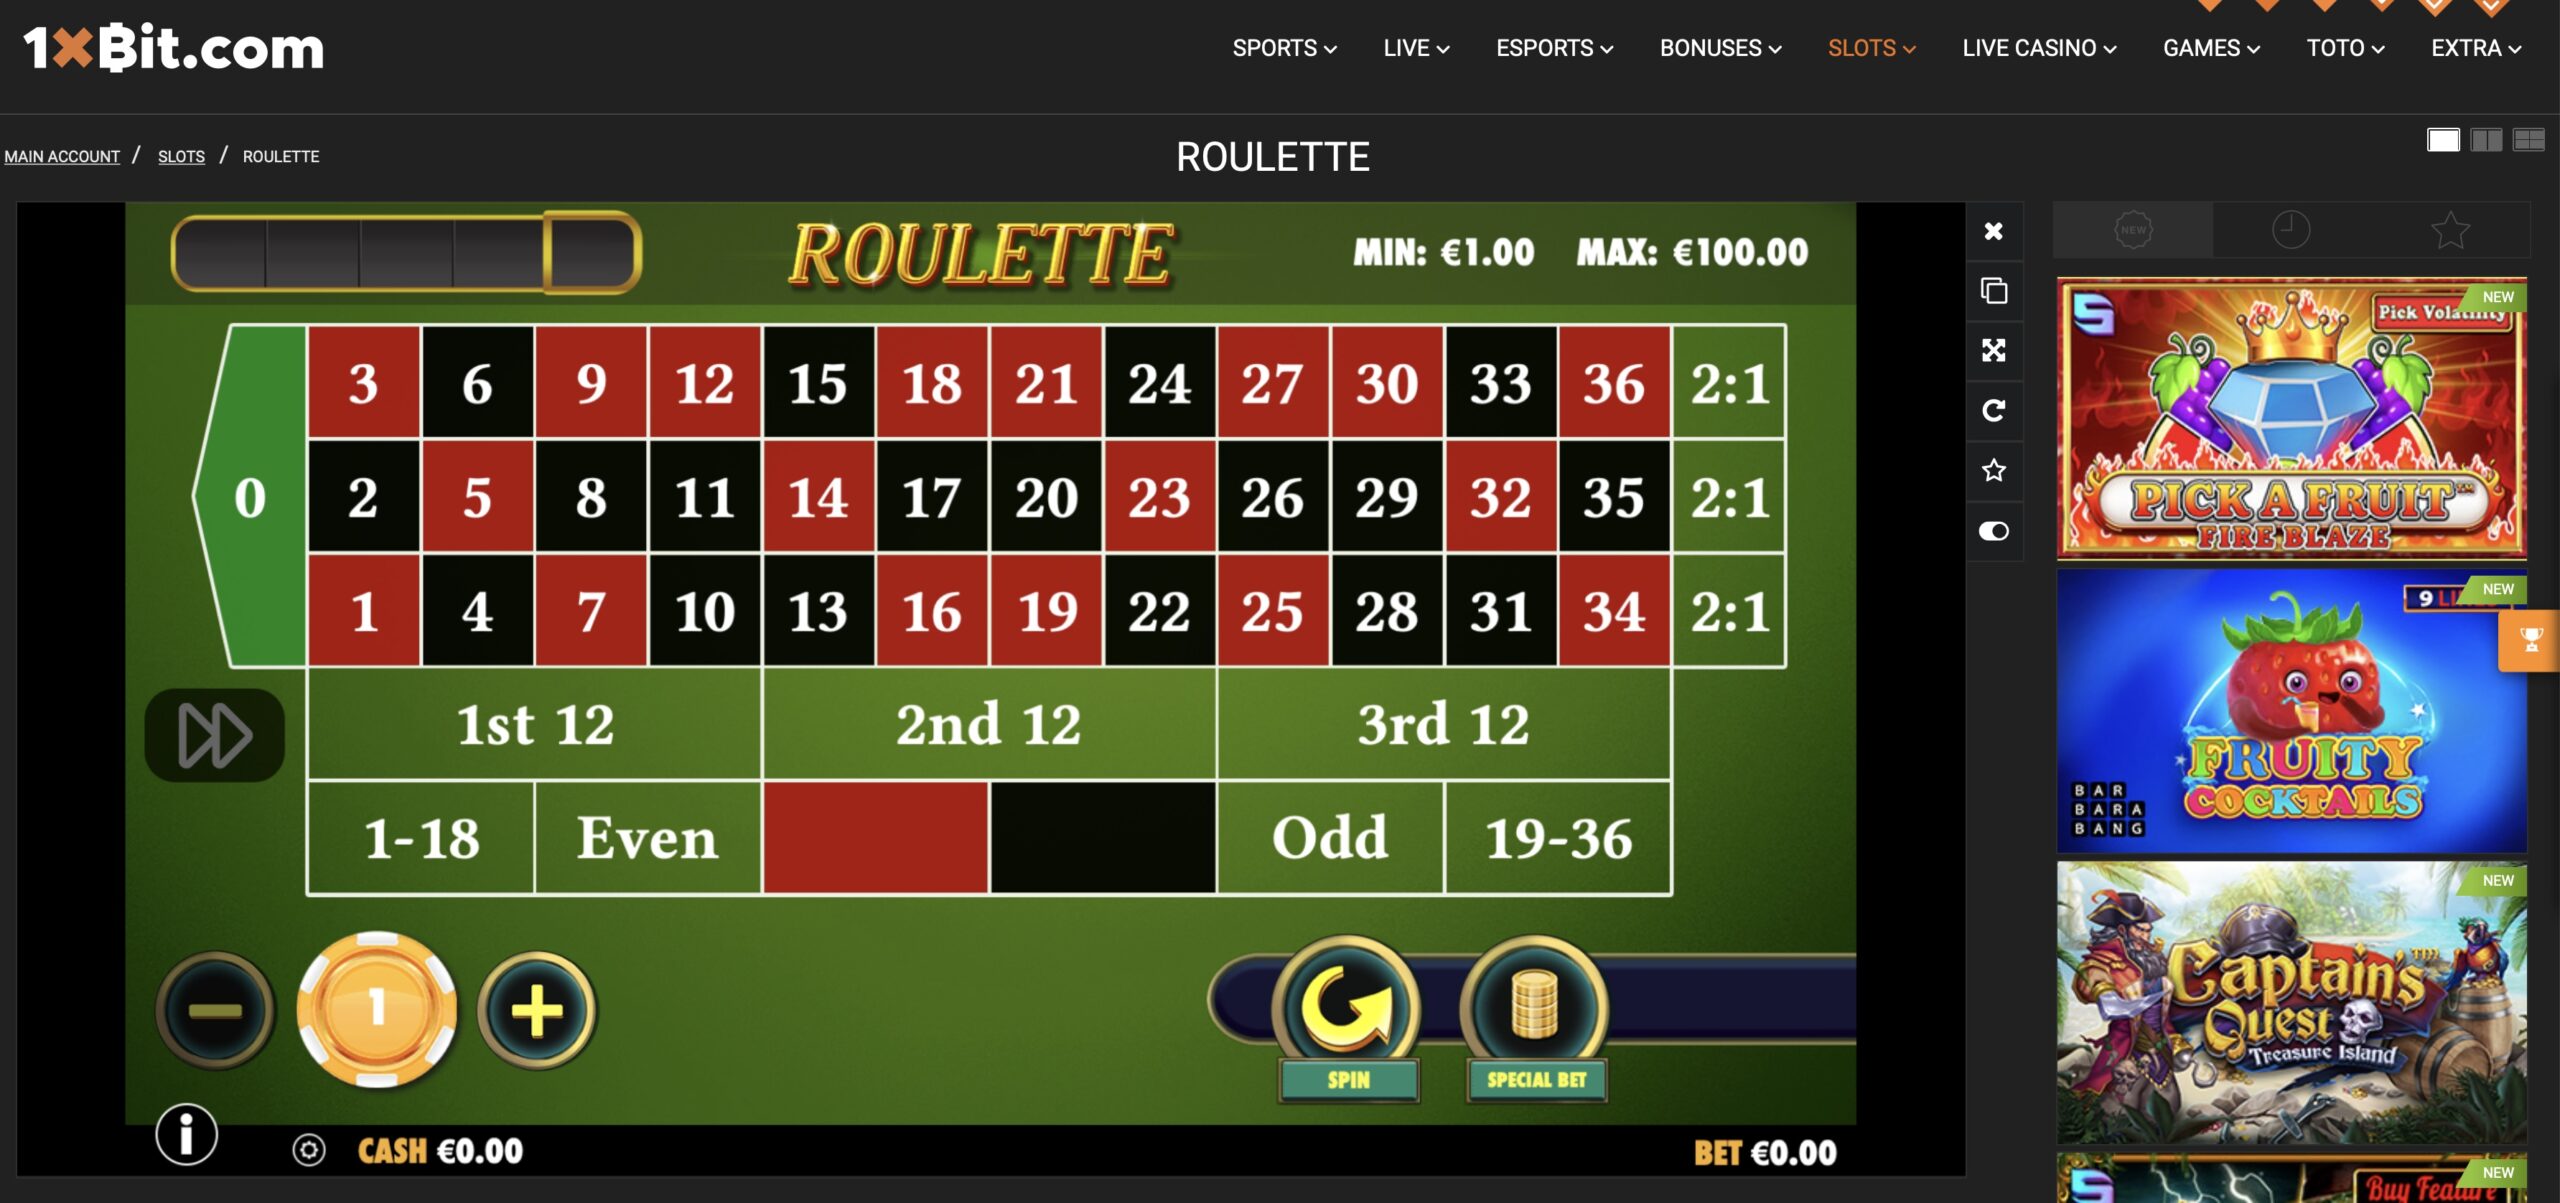 1xBit Roulette